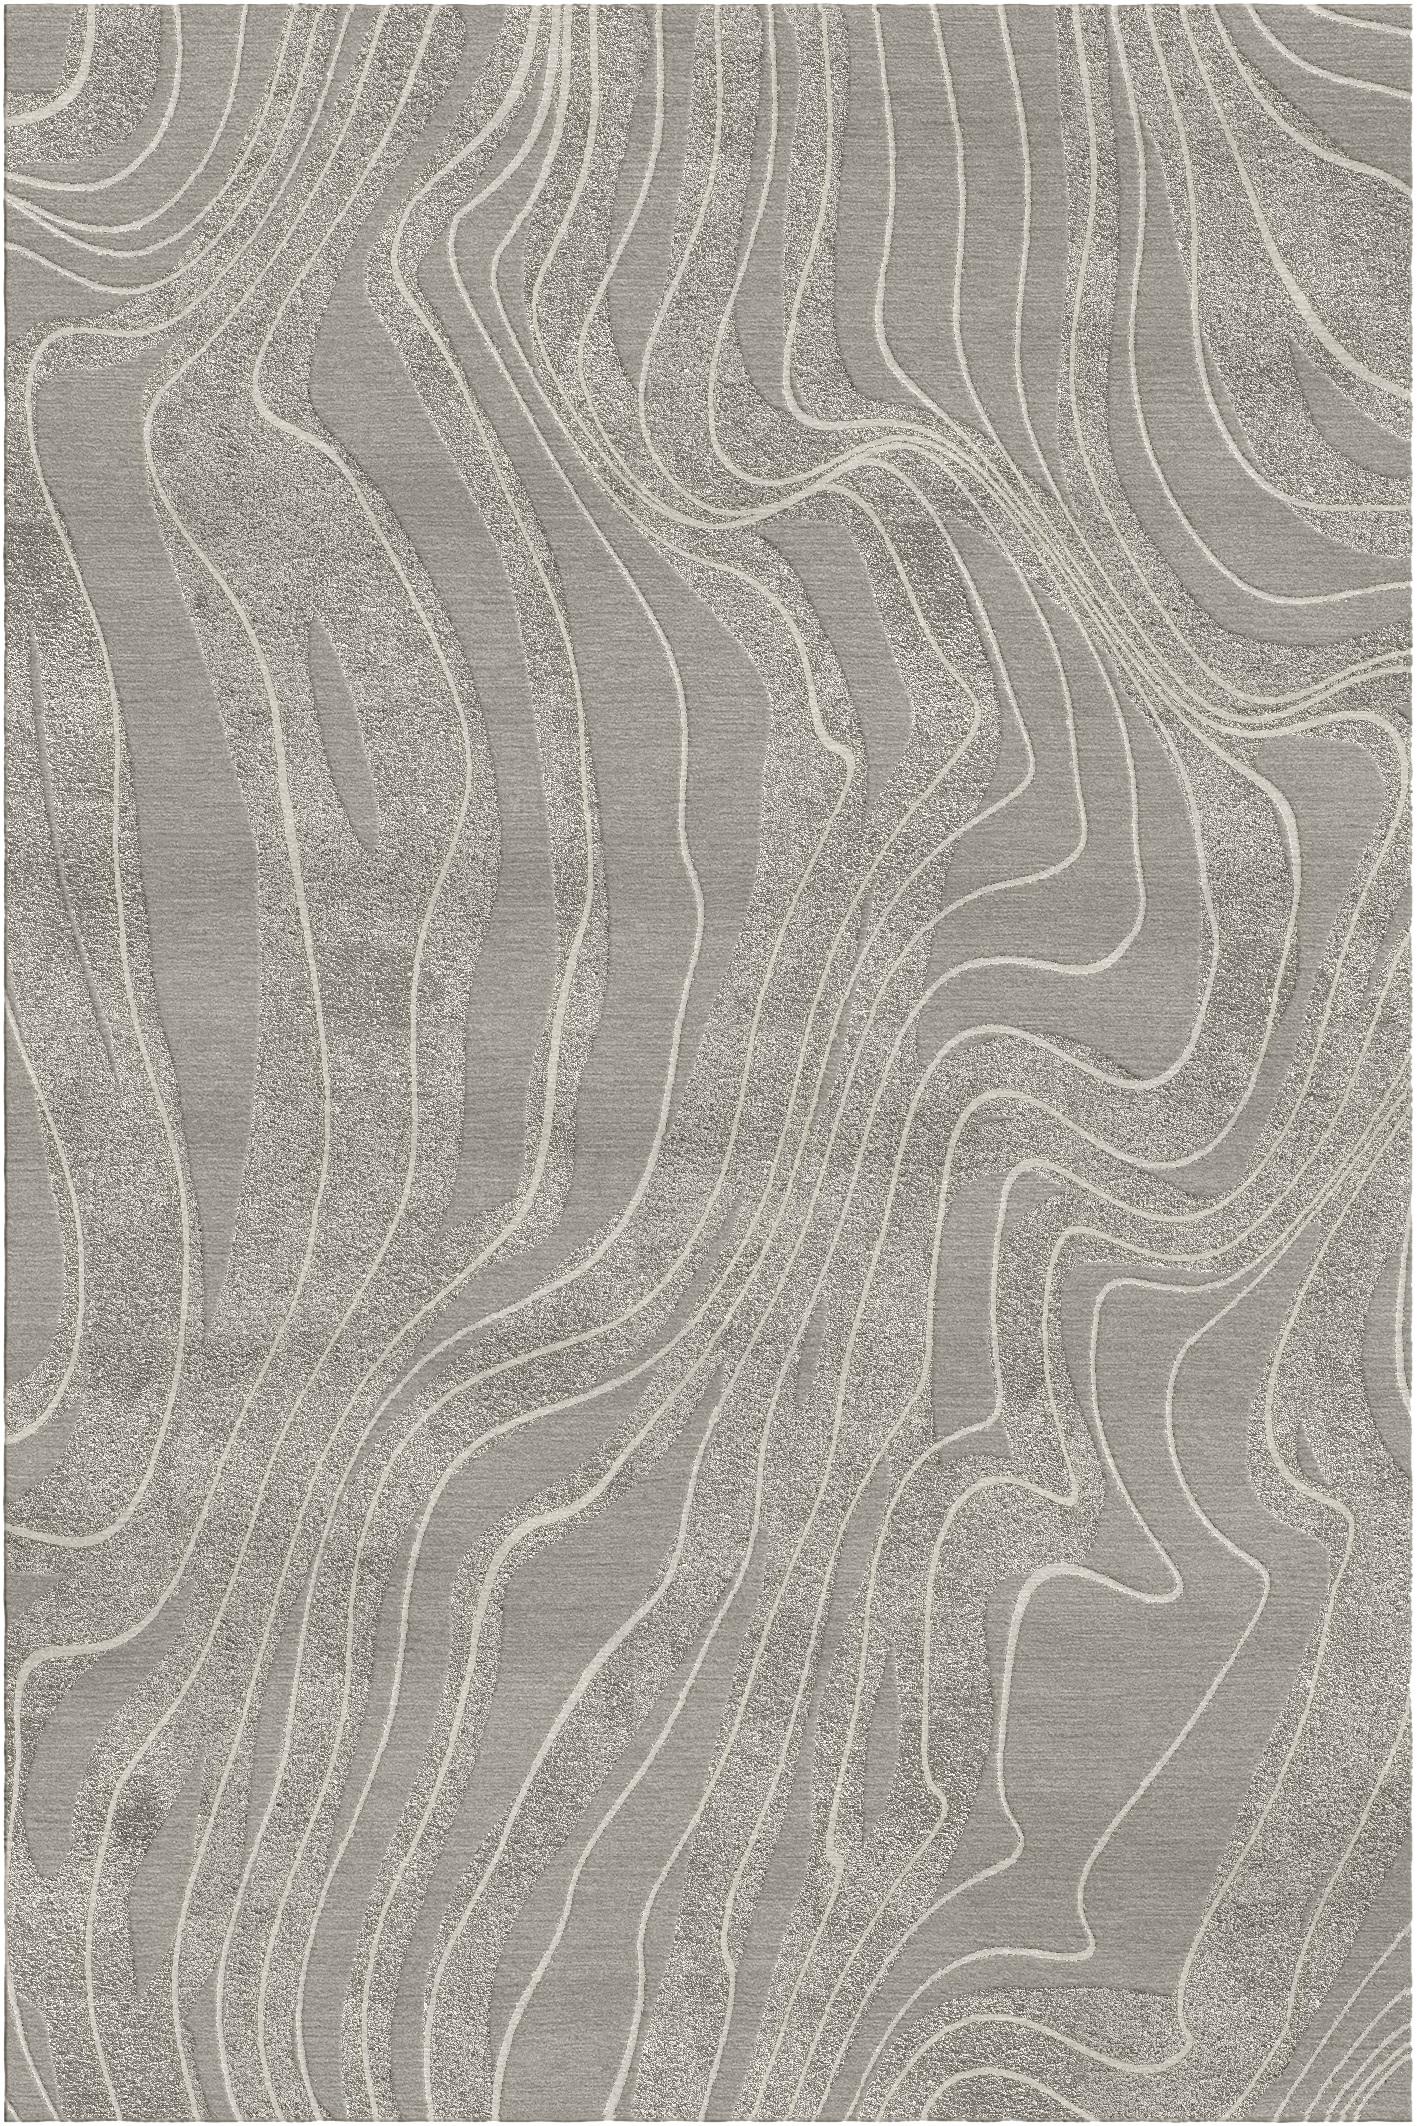 Deserto-Teppich I von Giulio Brambilla
Abmessungen: D 300 x B 200 x H 1,5 cm
MATERIALIEN: NZ-Wolle, Bambusseide
Erhältlich in anderen Farben.

Ein fesselndes Motiv aus gewundenen Linien, die sich über einen weichen Hintergrund schlängeln, definiert